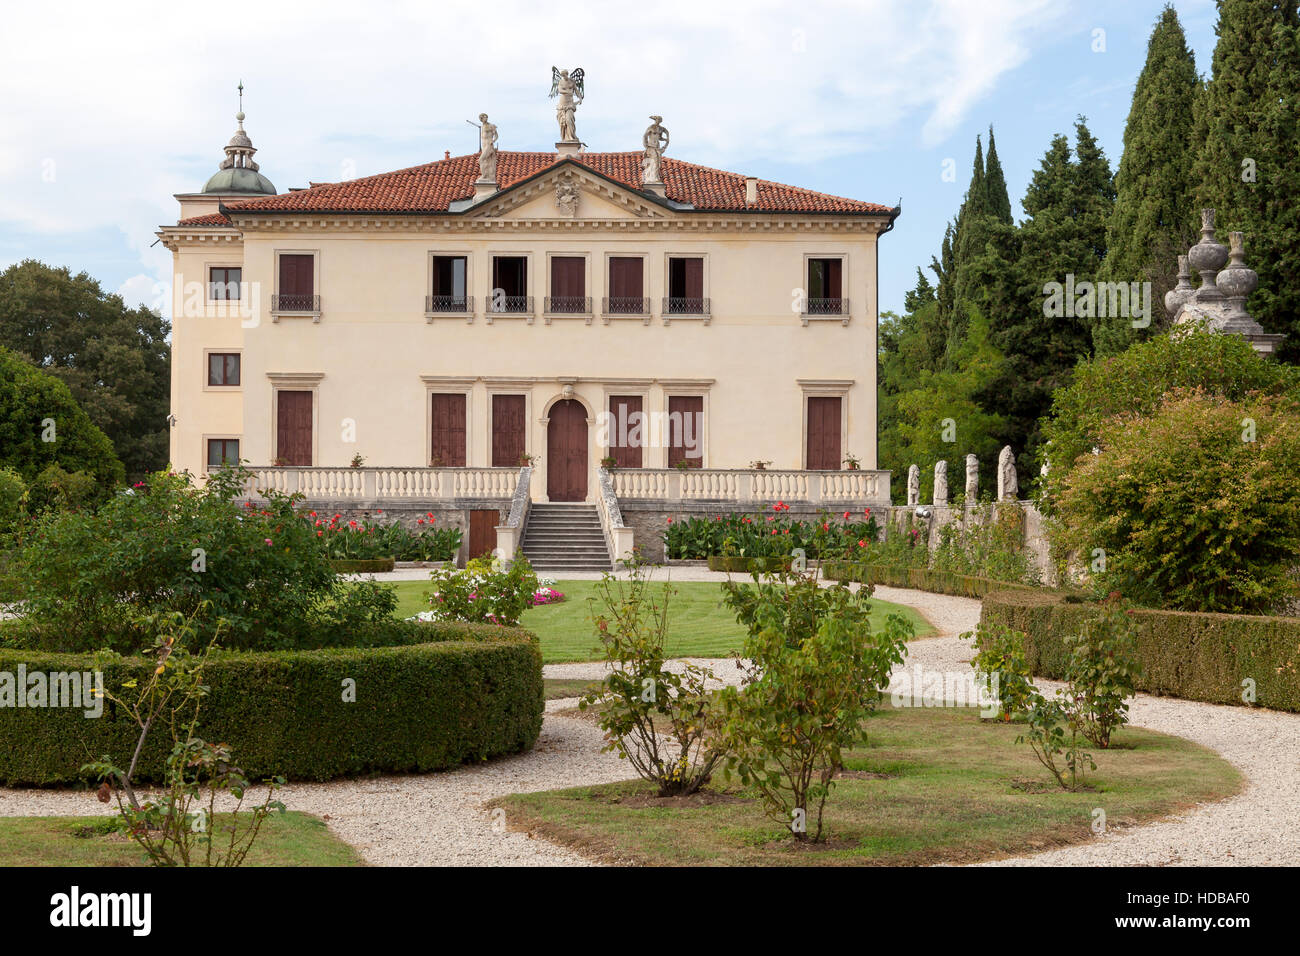 Villa Valmarana ai Nani, Vicenza, Veneto, Italy. Stock Photo